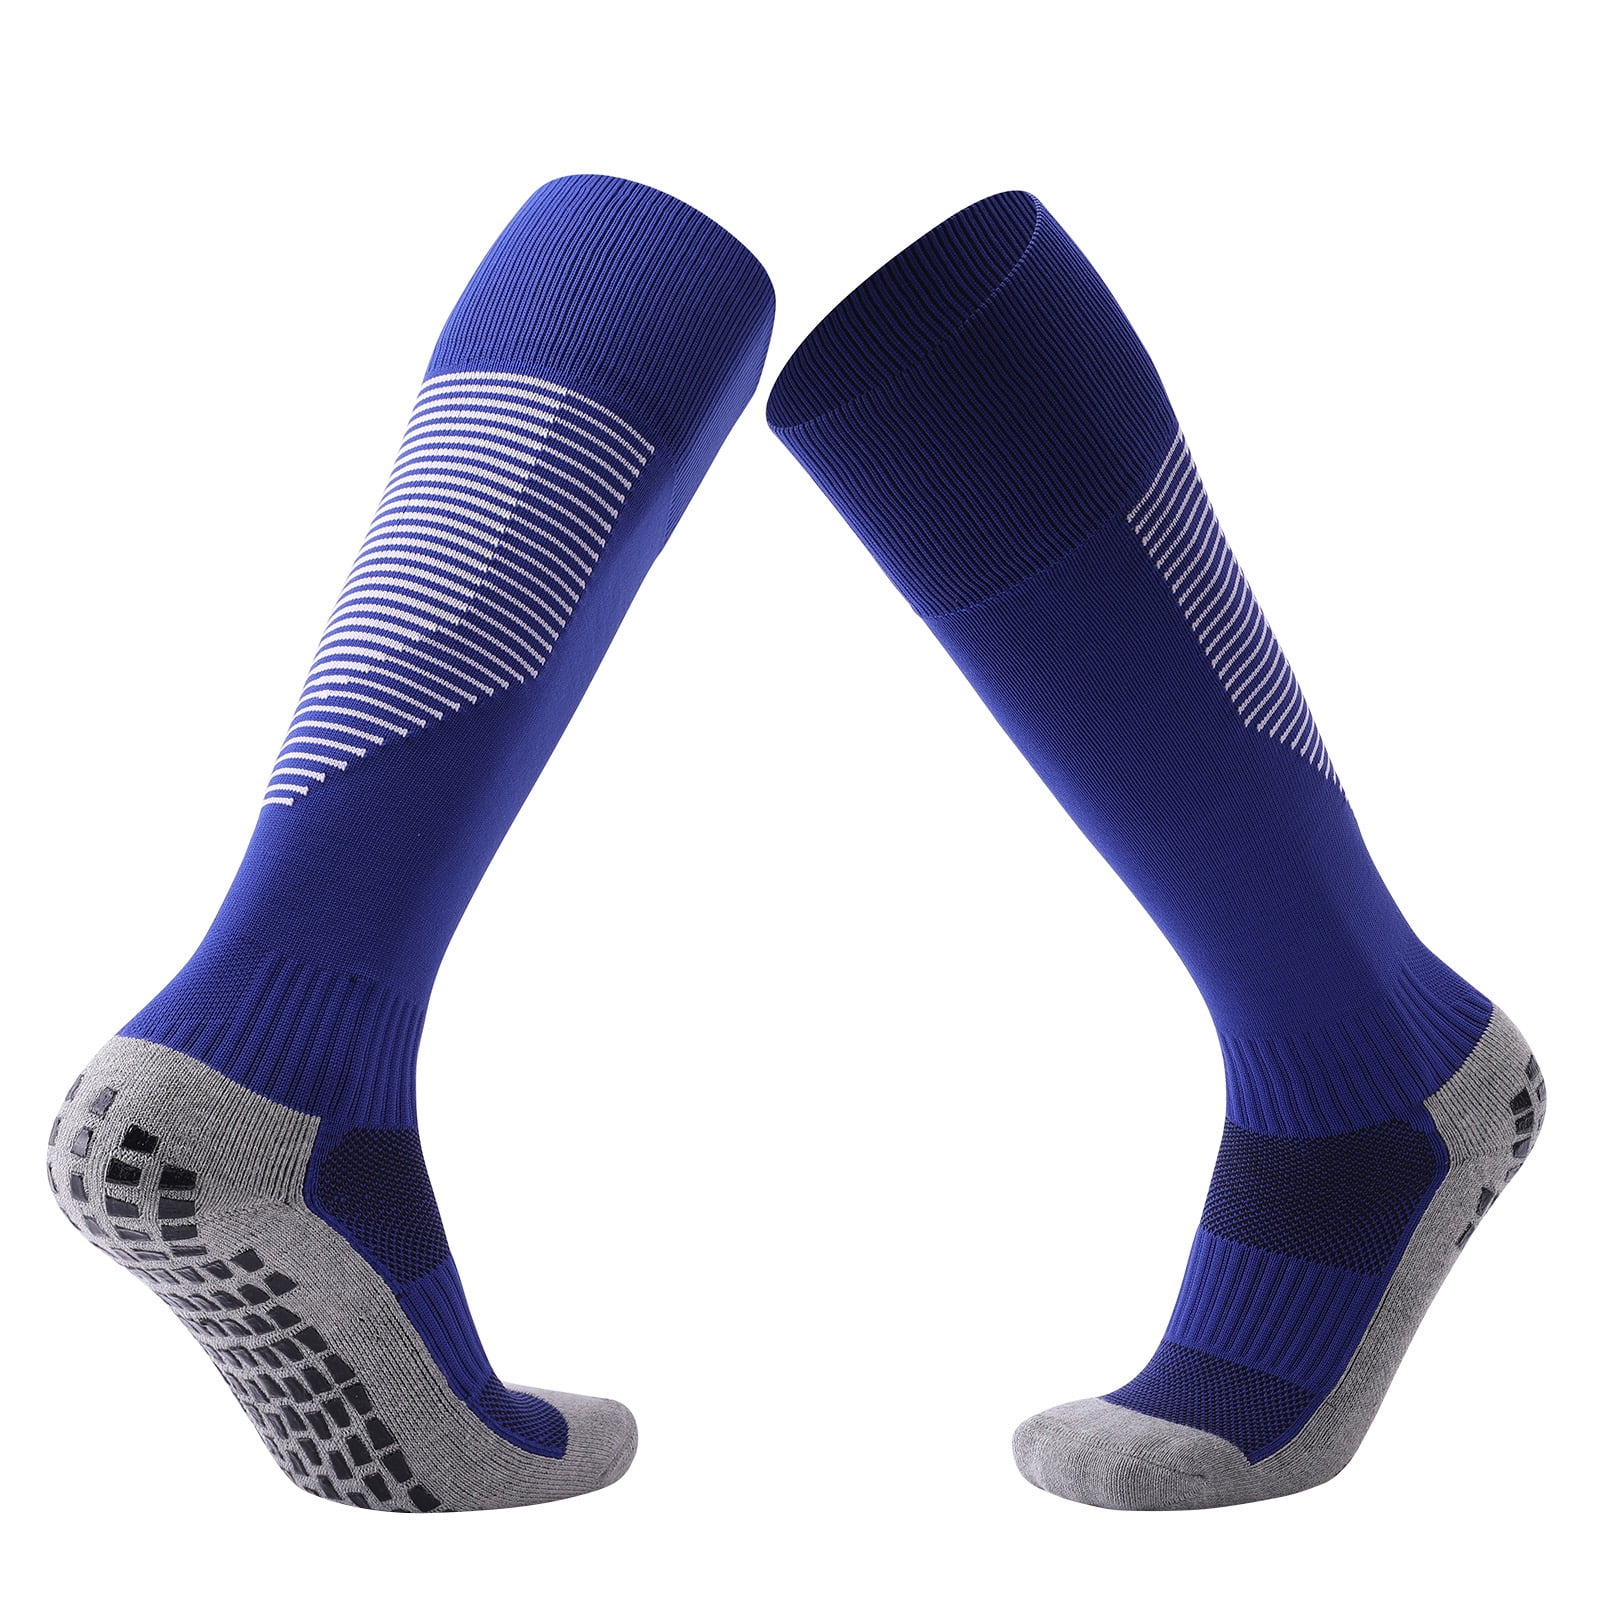 Breathable Soccer Socks Over Knee High Stocking Anti-slip Basketball Football